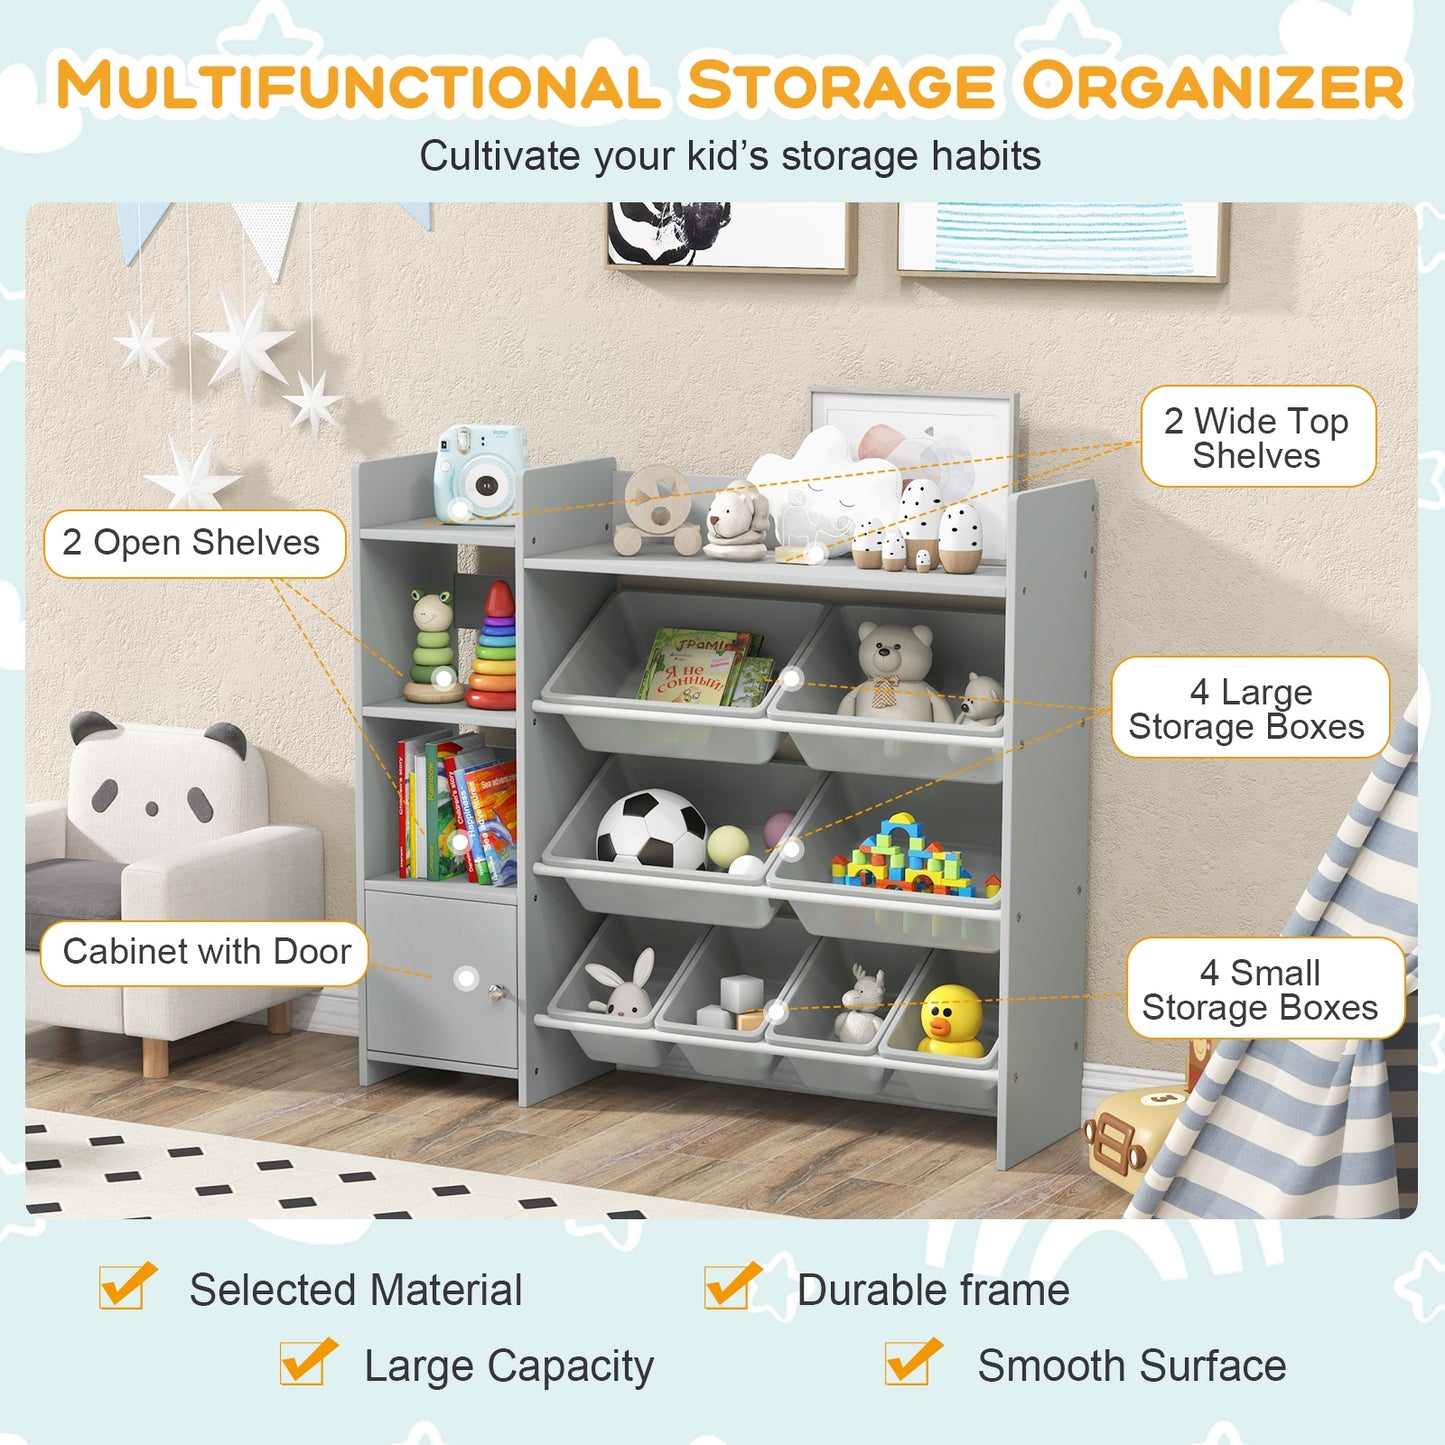 4-Tier Kids Bookshelf and Toy Storage Rack with 8 Toy Organizer Bins-Grey